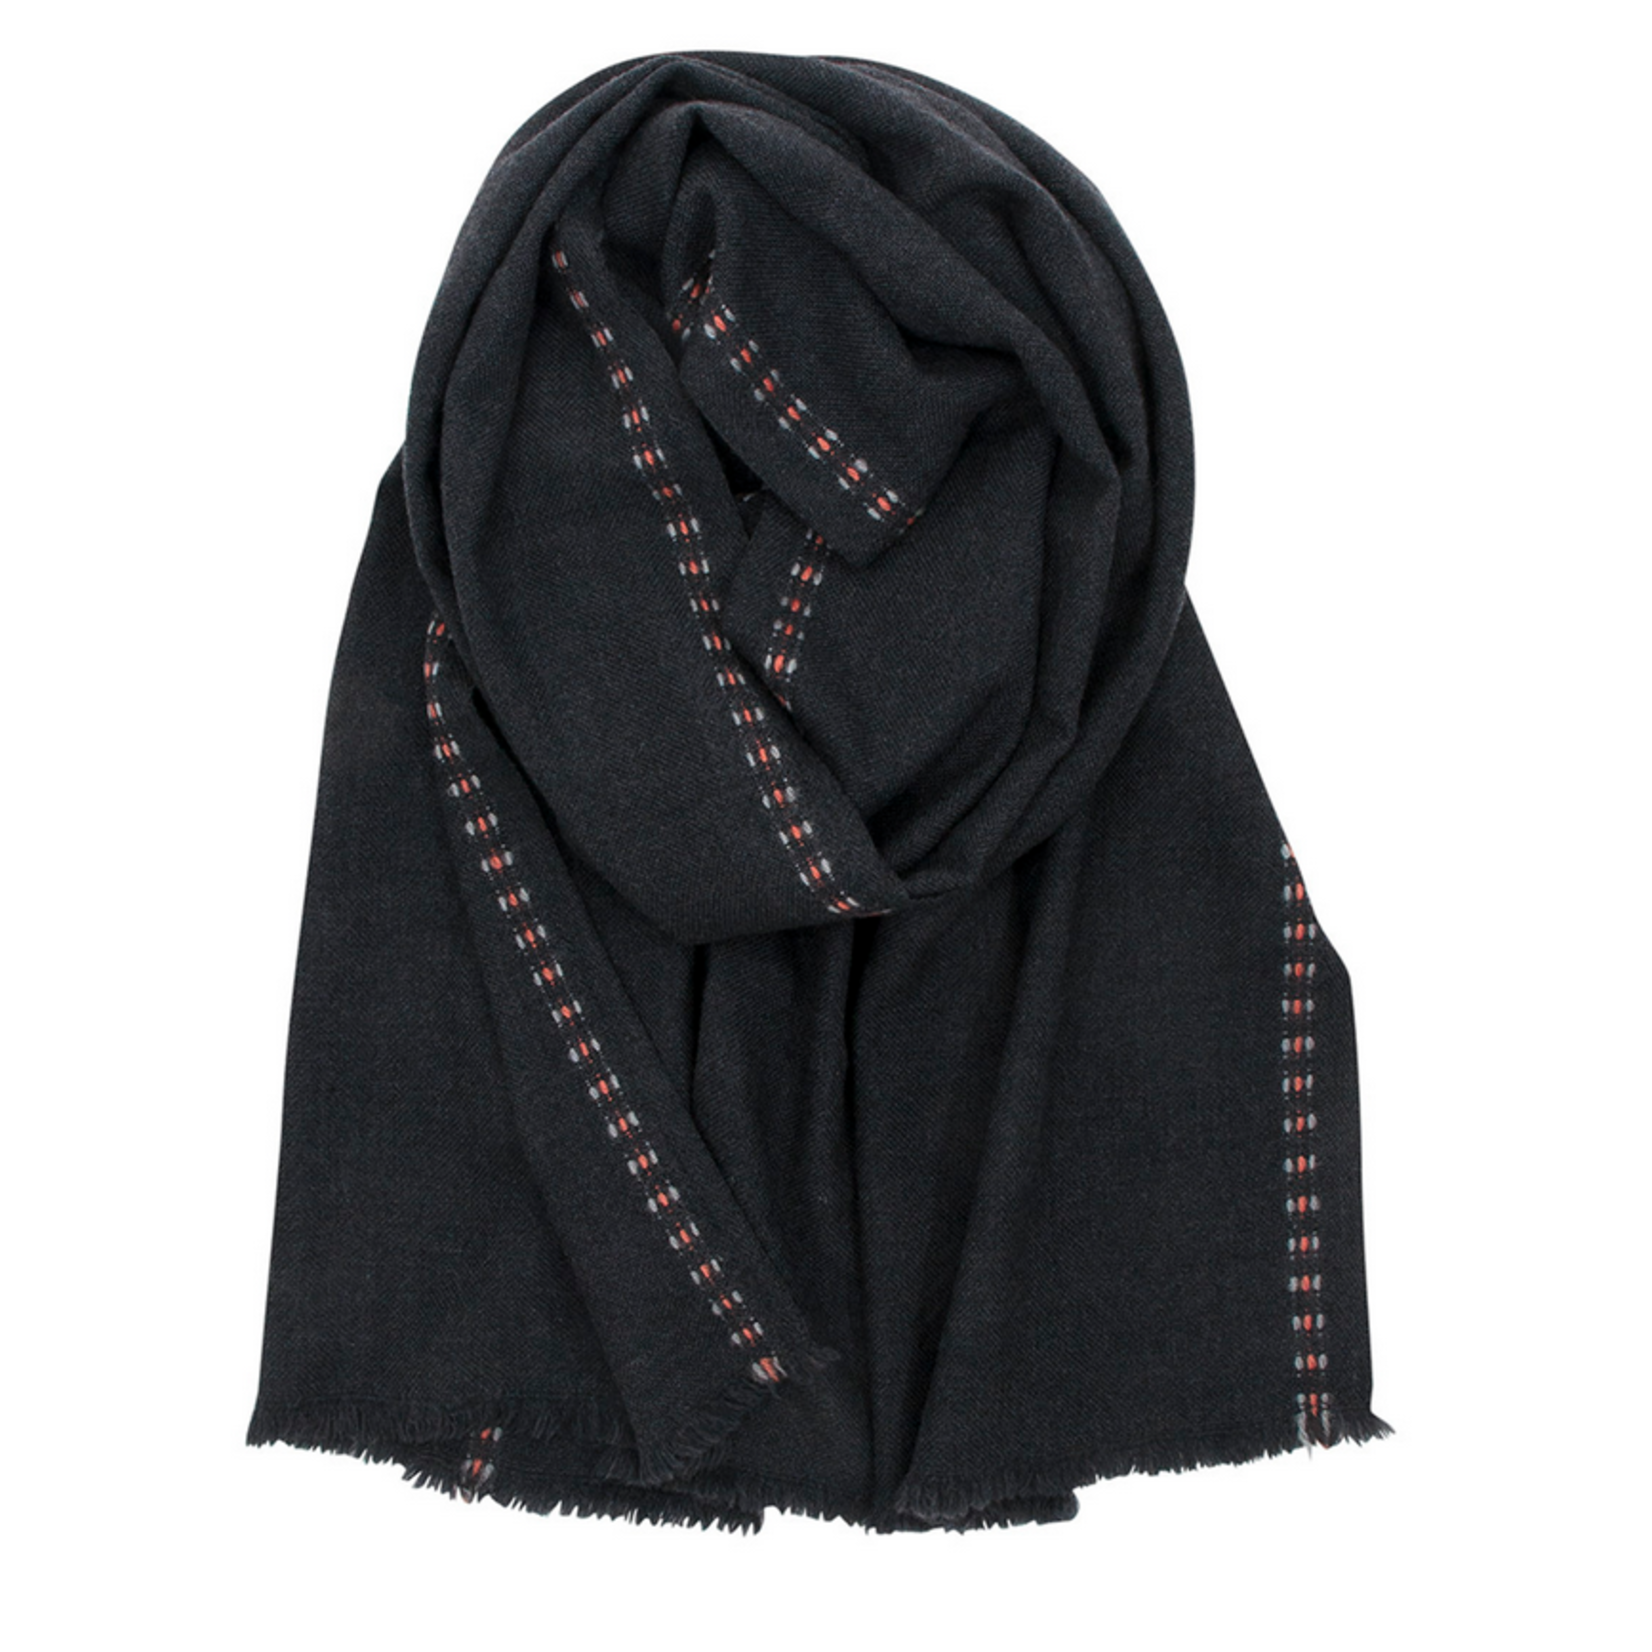 Lapuan Kankurit SAANA scarf, 100 % merino wool, dark grey